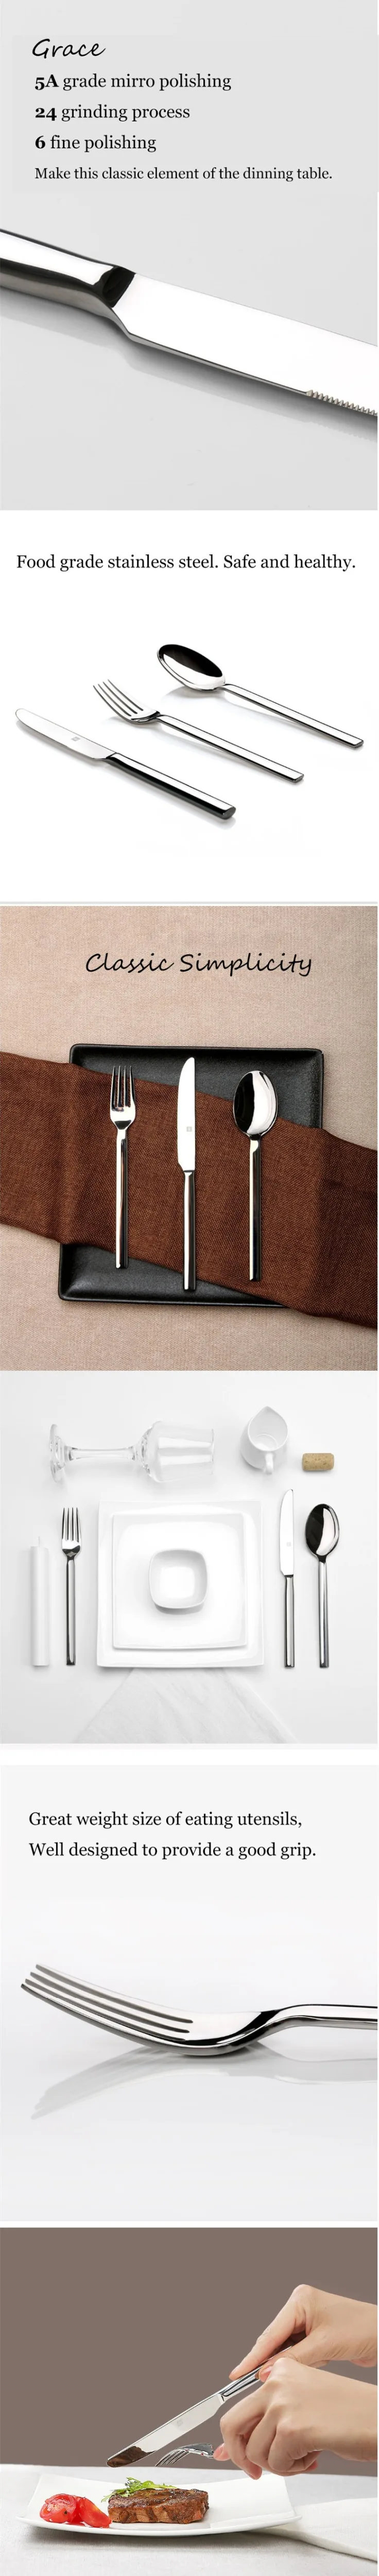 Xiaomi Mijia Huohou стейк ножи ложки вилка нержавеющая сталь столовая посуда бытовые столовые приборы для семьи друзей подарок